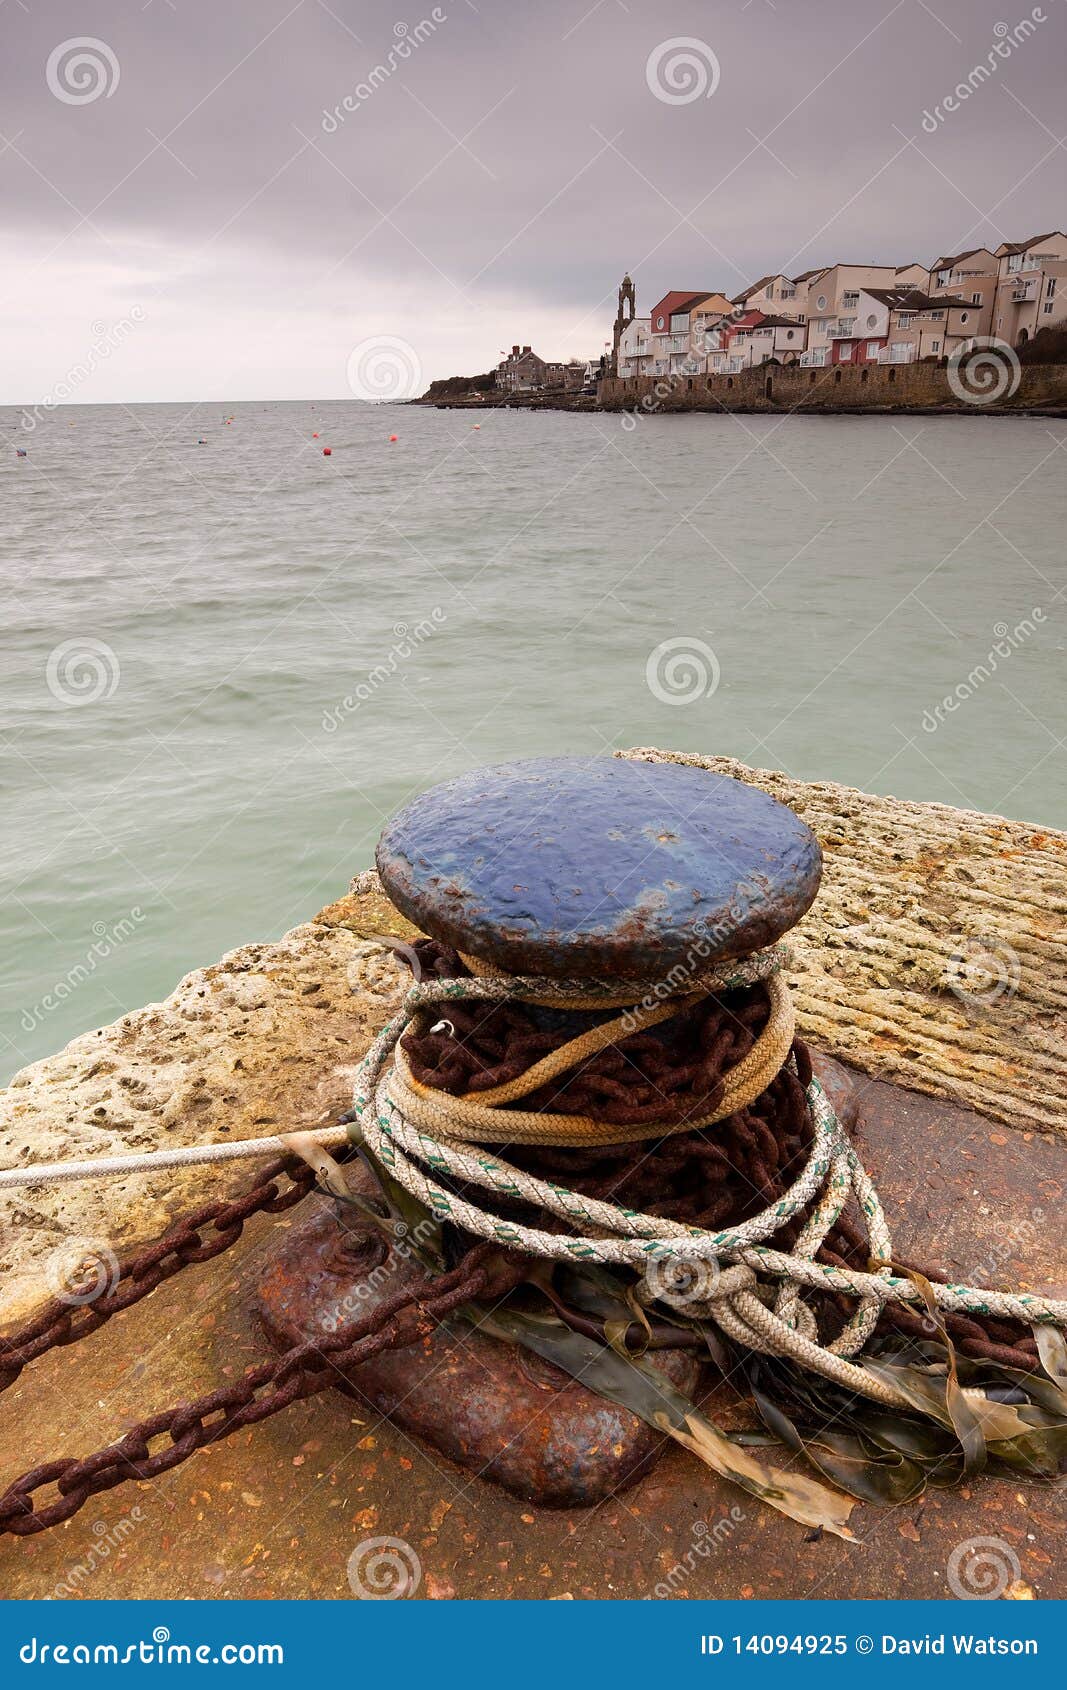 ropes around maritime bollard